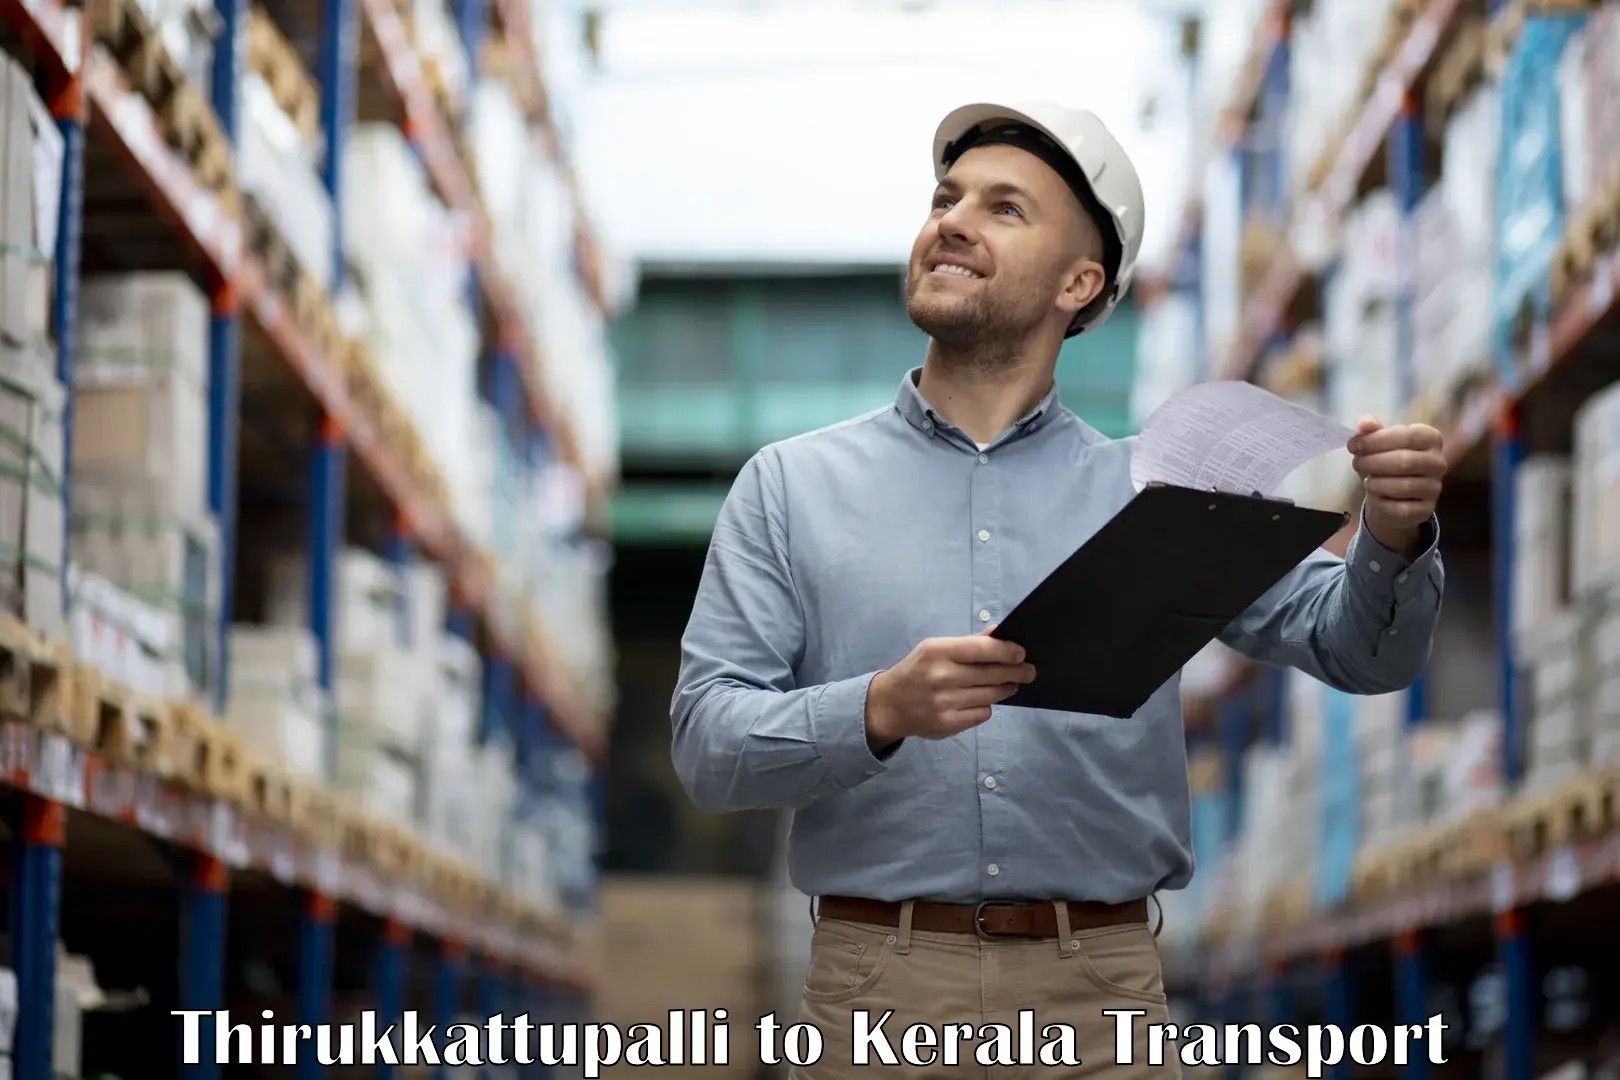 Daily parcel service transport Thirukkattupalli to IIIT Kottayam